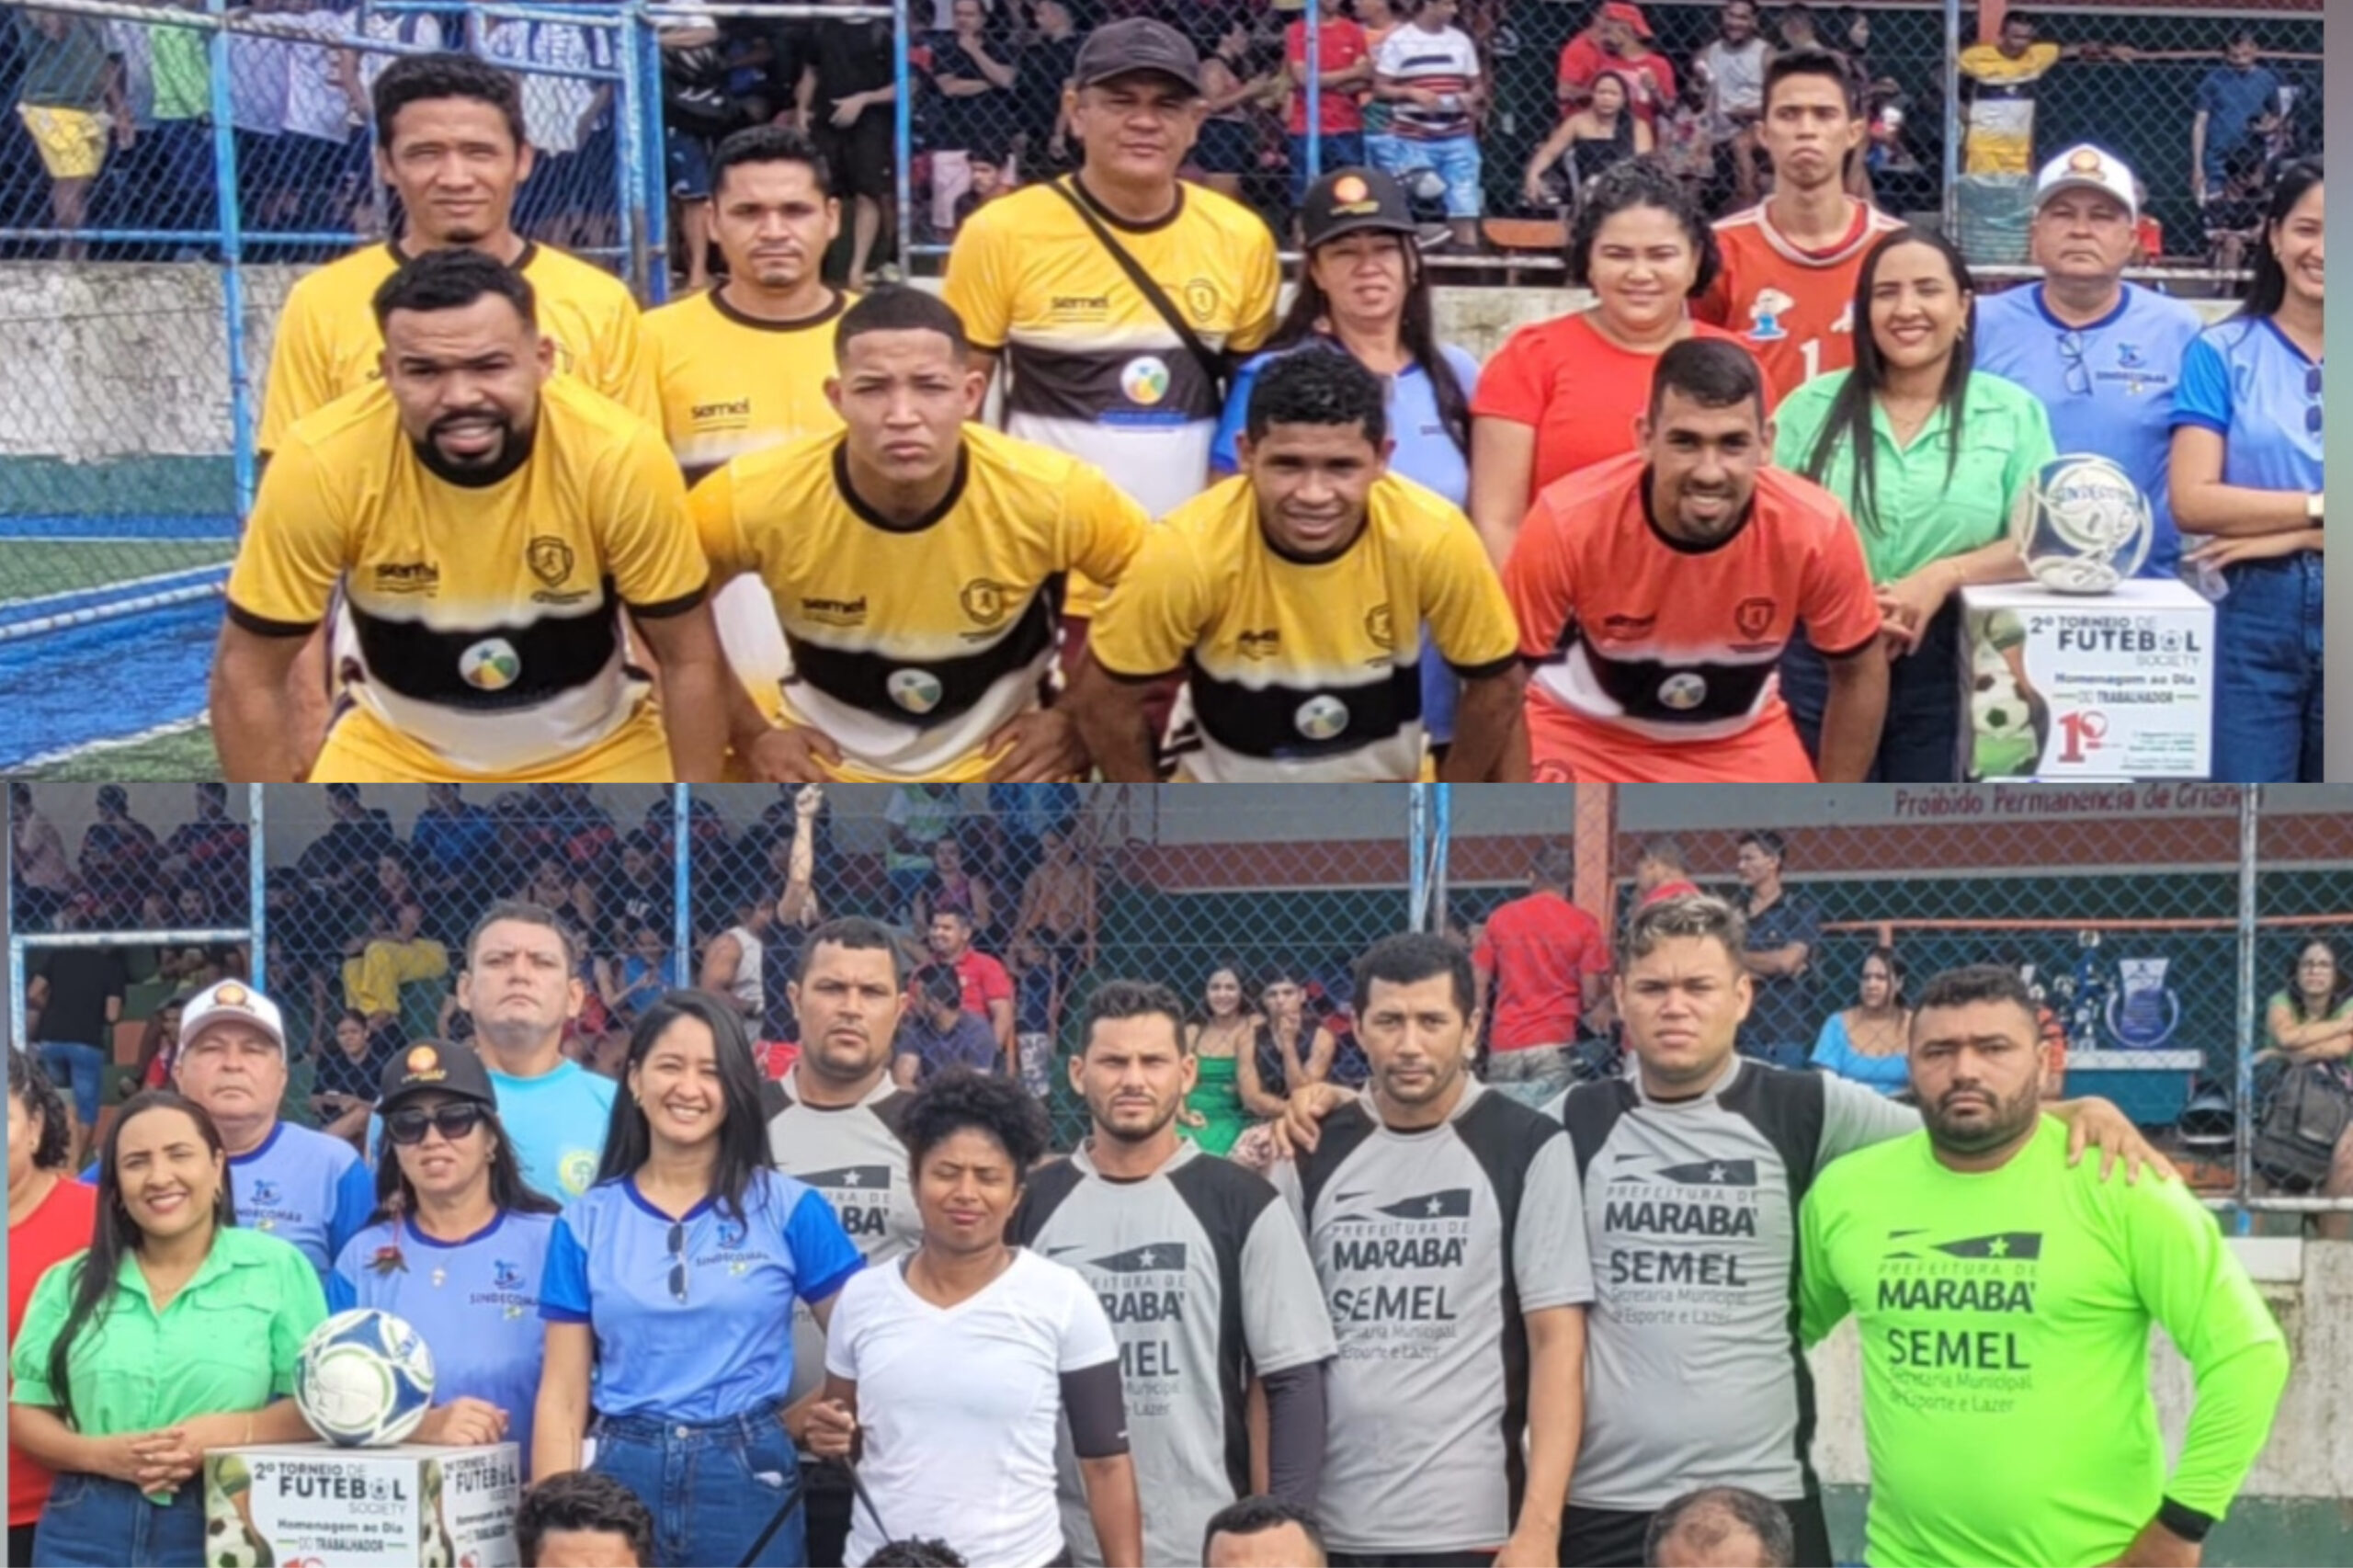 Sindecomar premia equipes ganhadoras no 2º Torneio do Trabalhador em Marabá